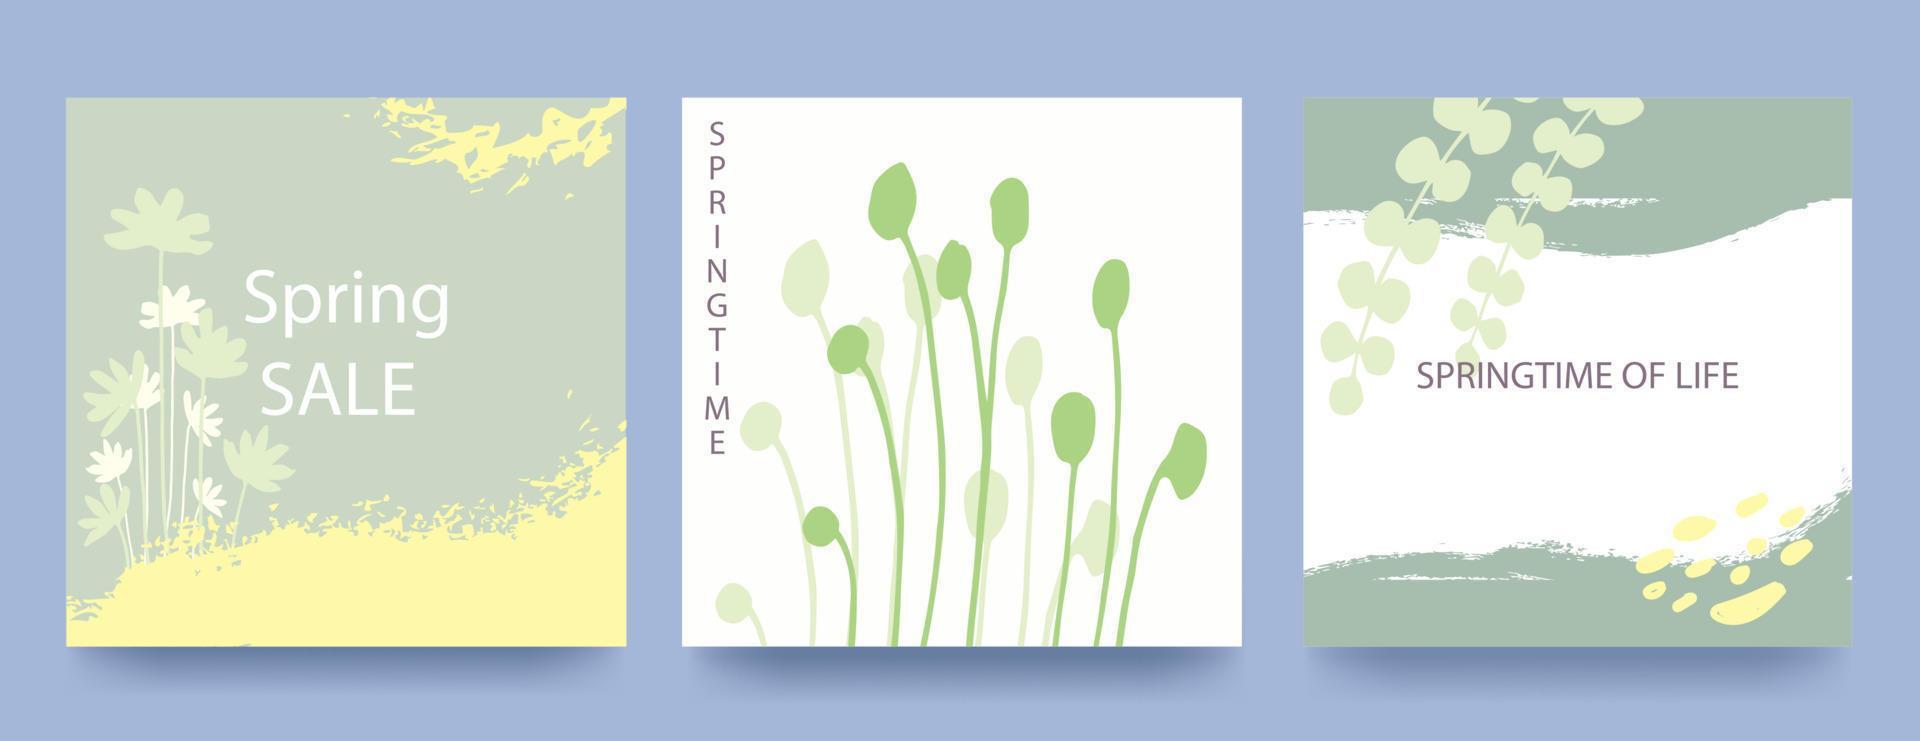 arrière-plans carrés vert printemps. style minimaliste avec des éléments floraux et de la texture. modèle modifiable.illustration vectorielle vecteur